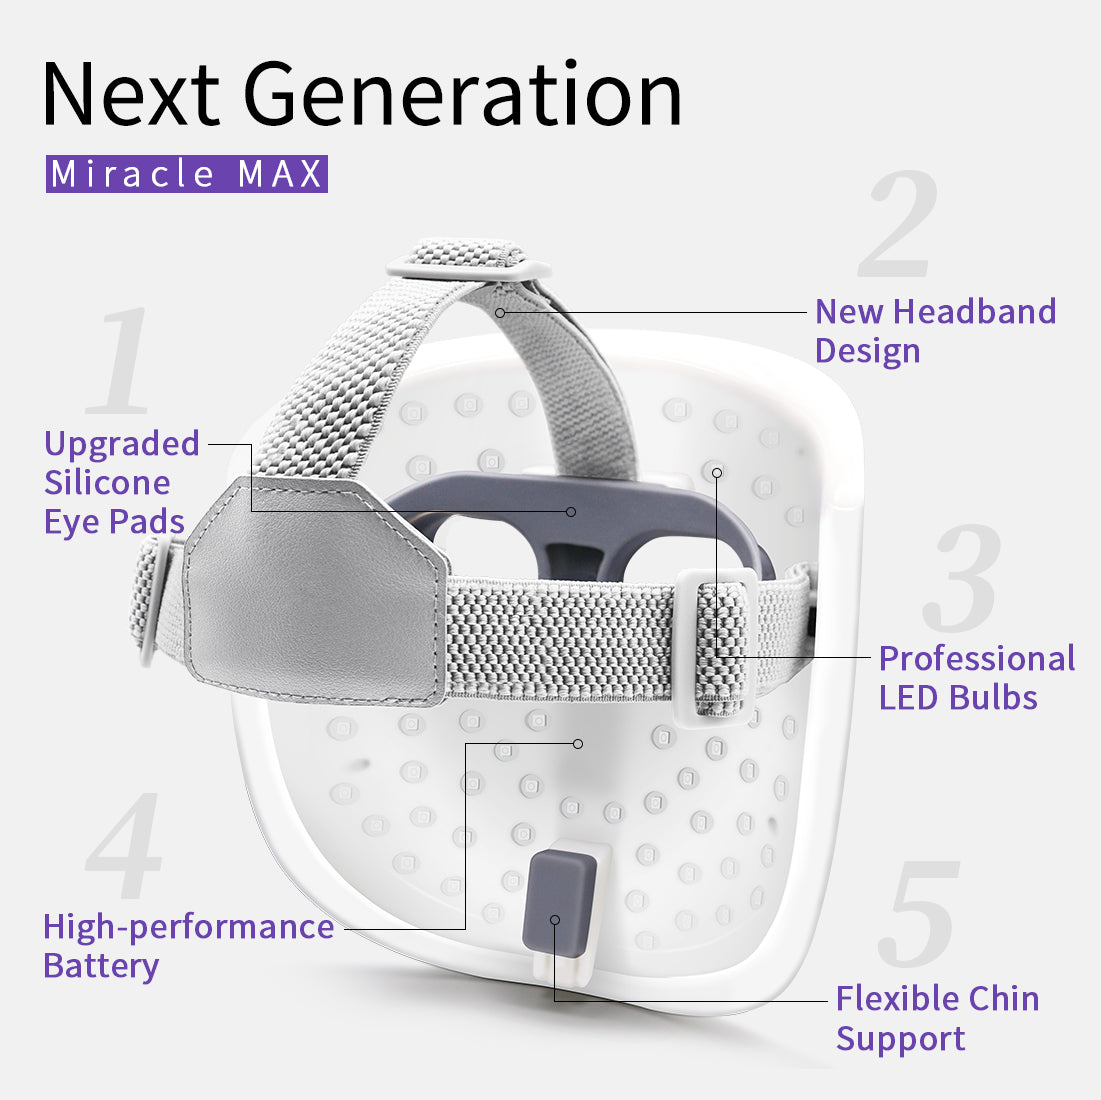 Maschera a LED per il Viso Dispositivo di Bellezza con Terapia della Luce Facciale (Miracle MAX)